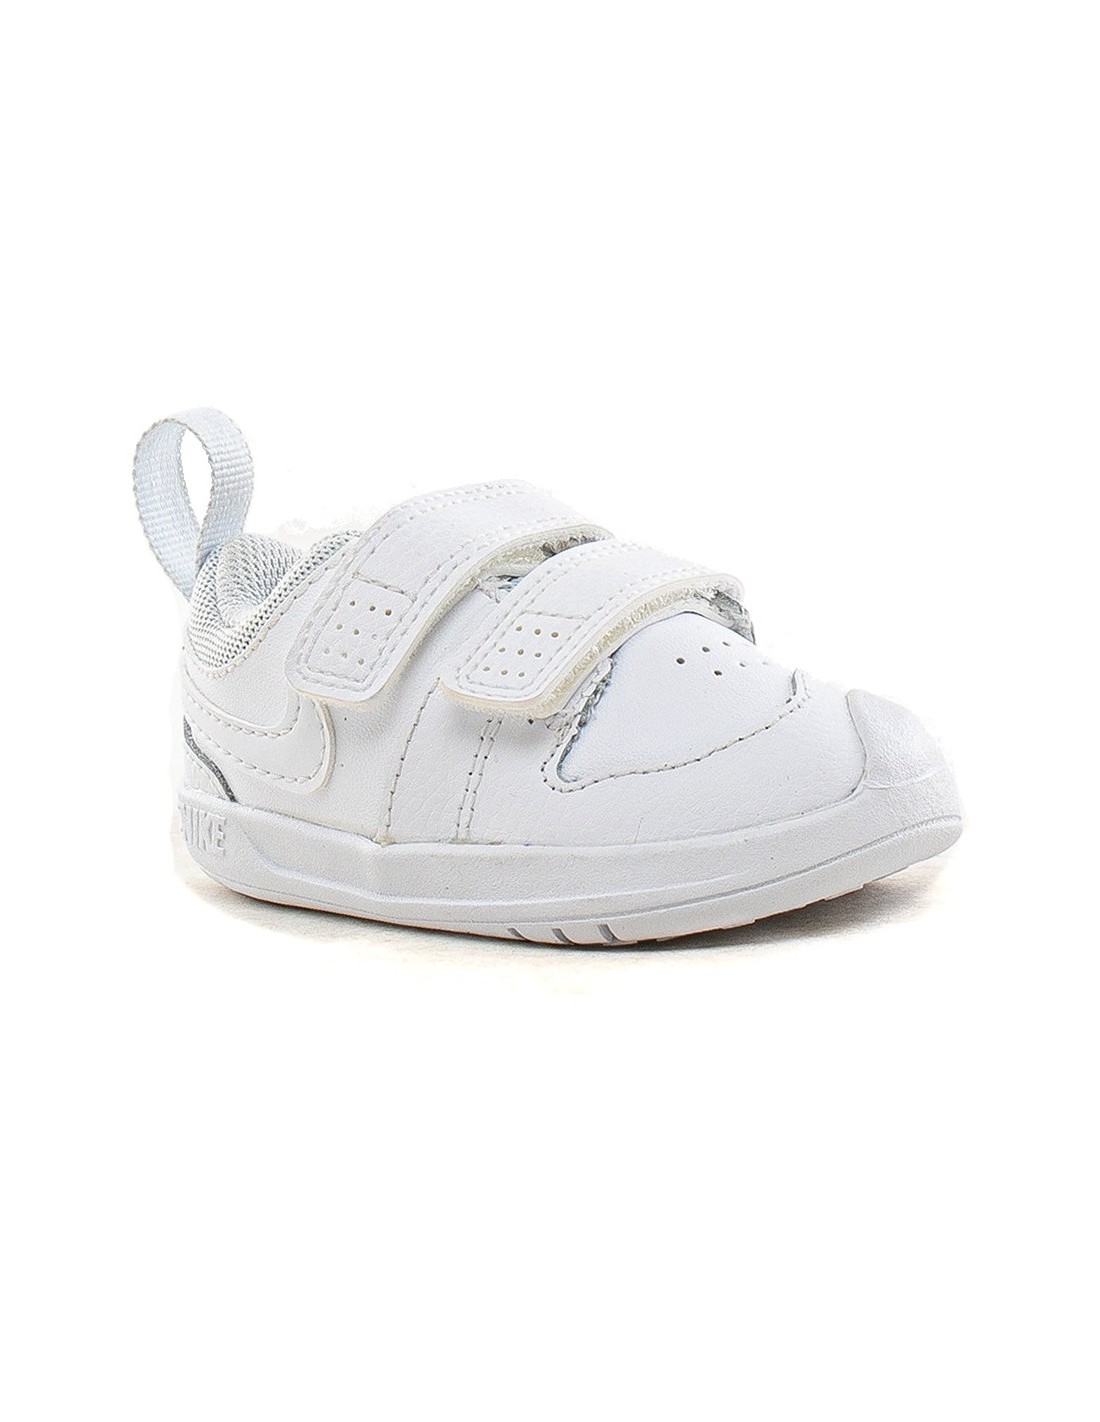 Zapatillas de bebé Nike Pico 5 Ar4162-100 - Onda Sports